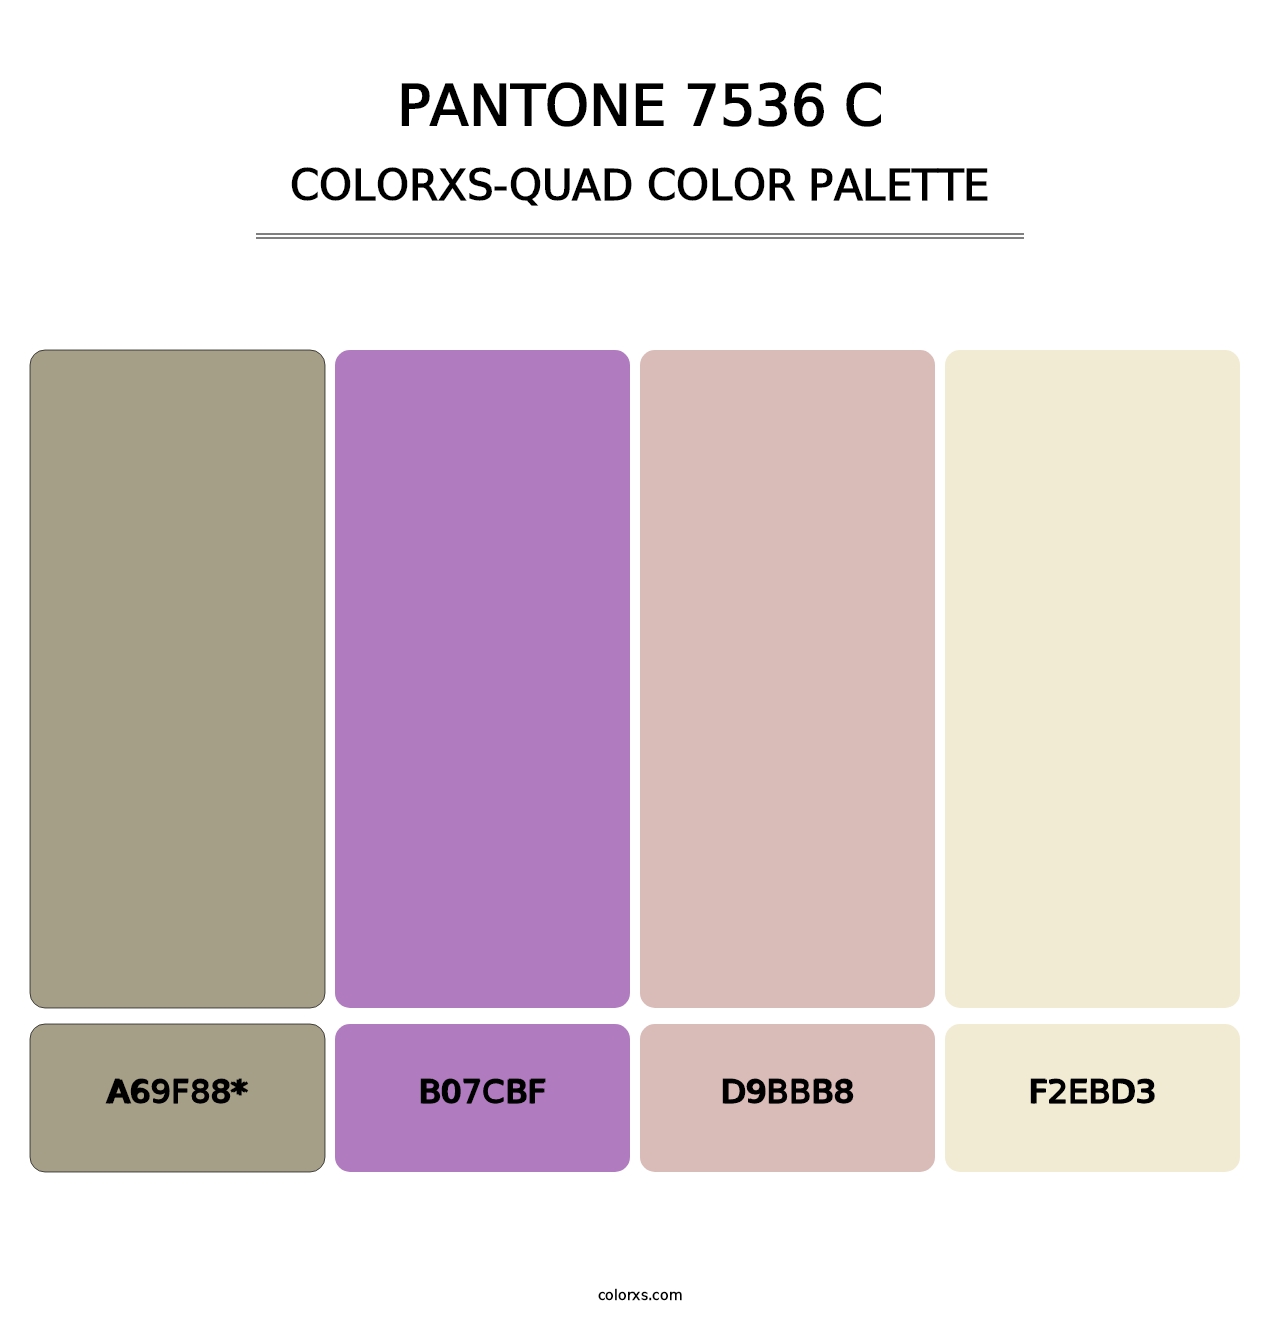 PANTONE 7536 C - Colorxs Quad Palette